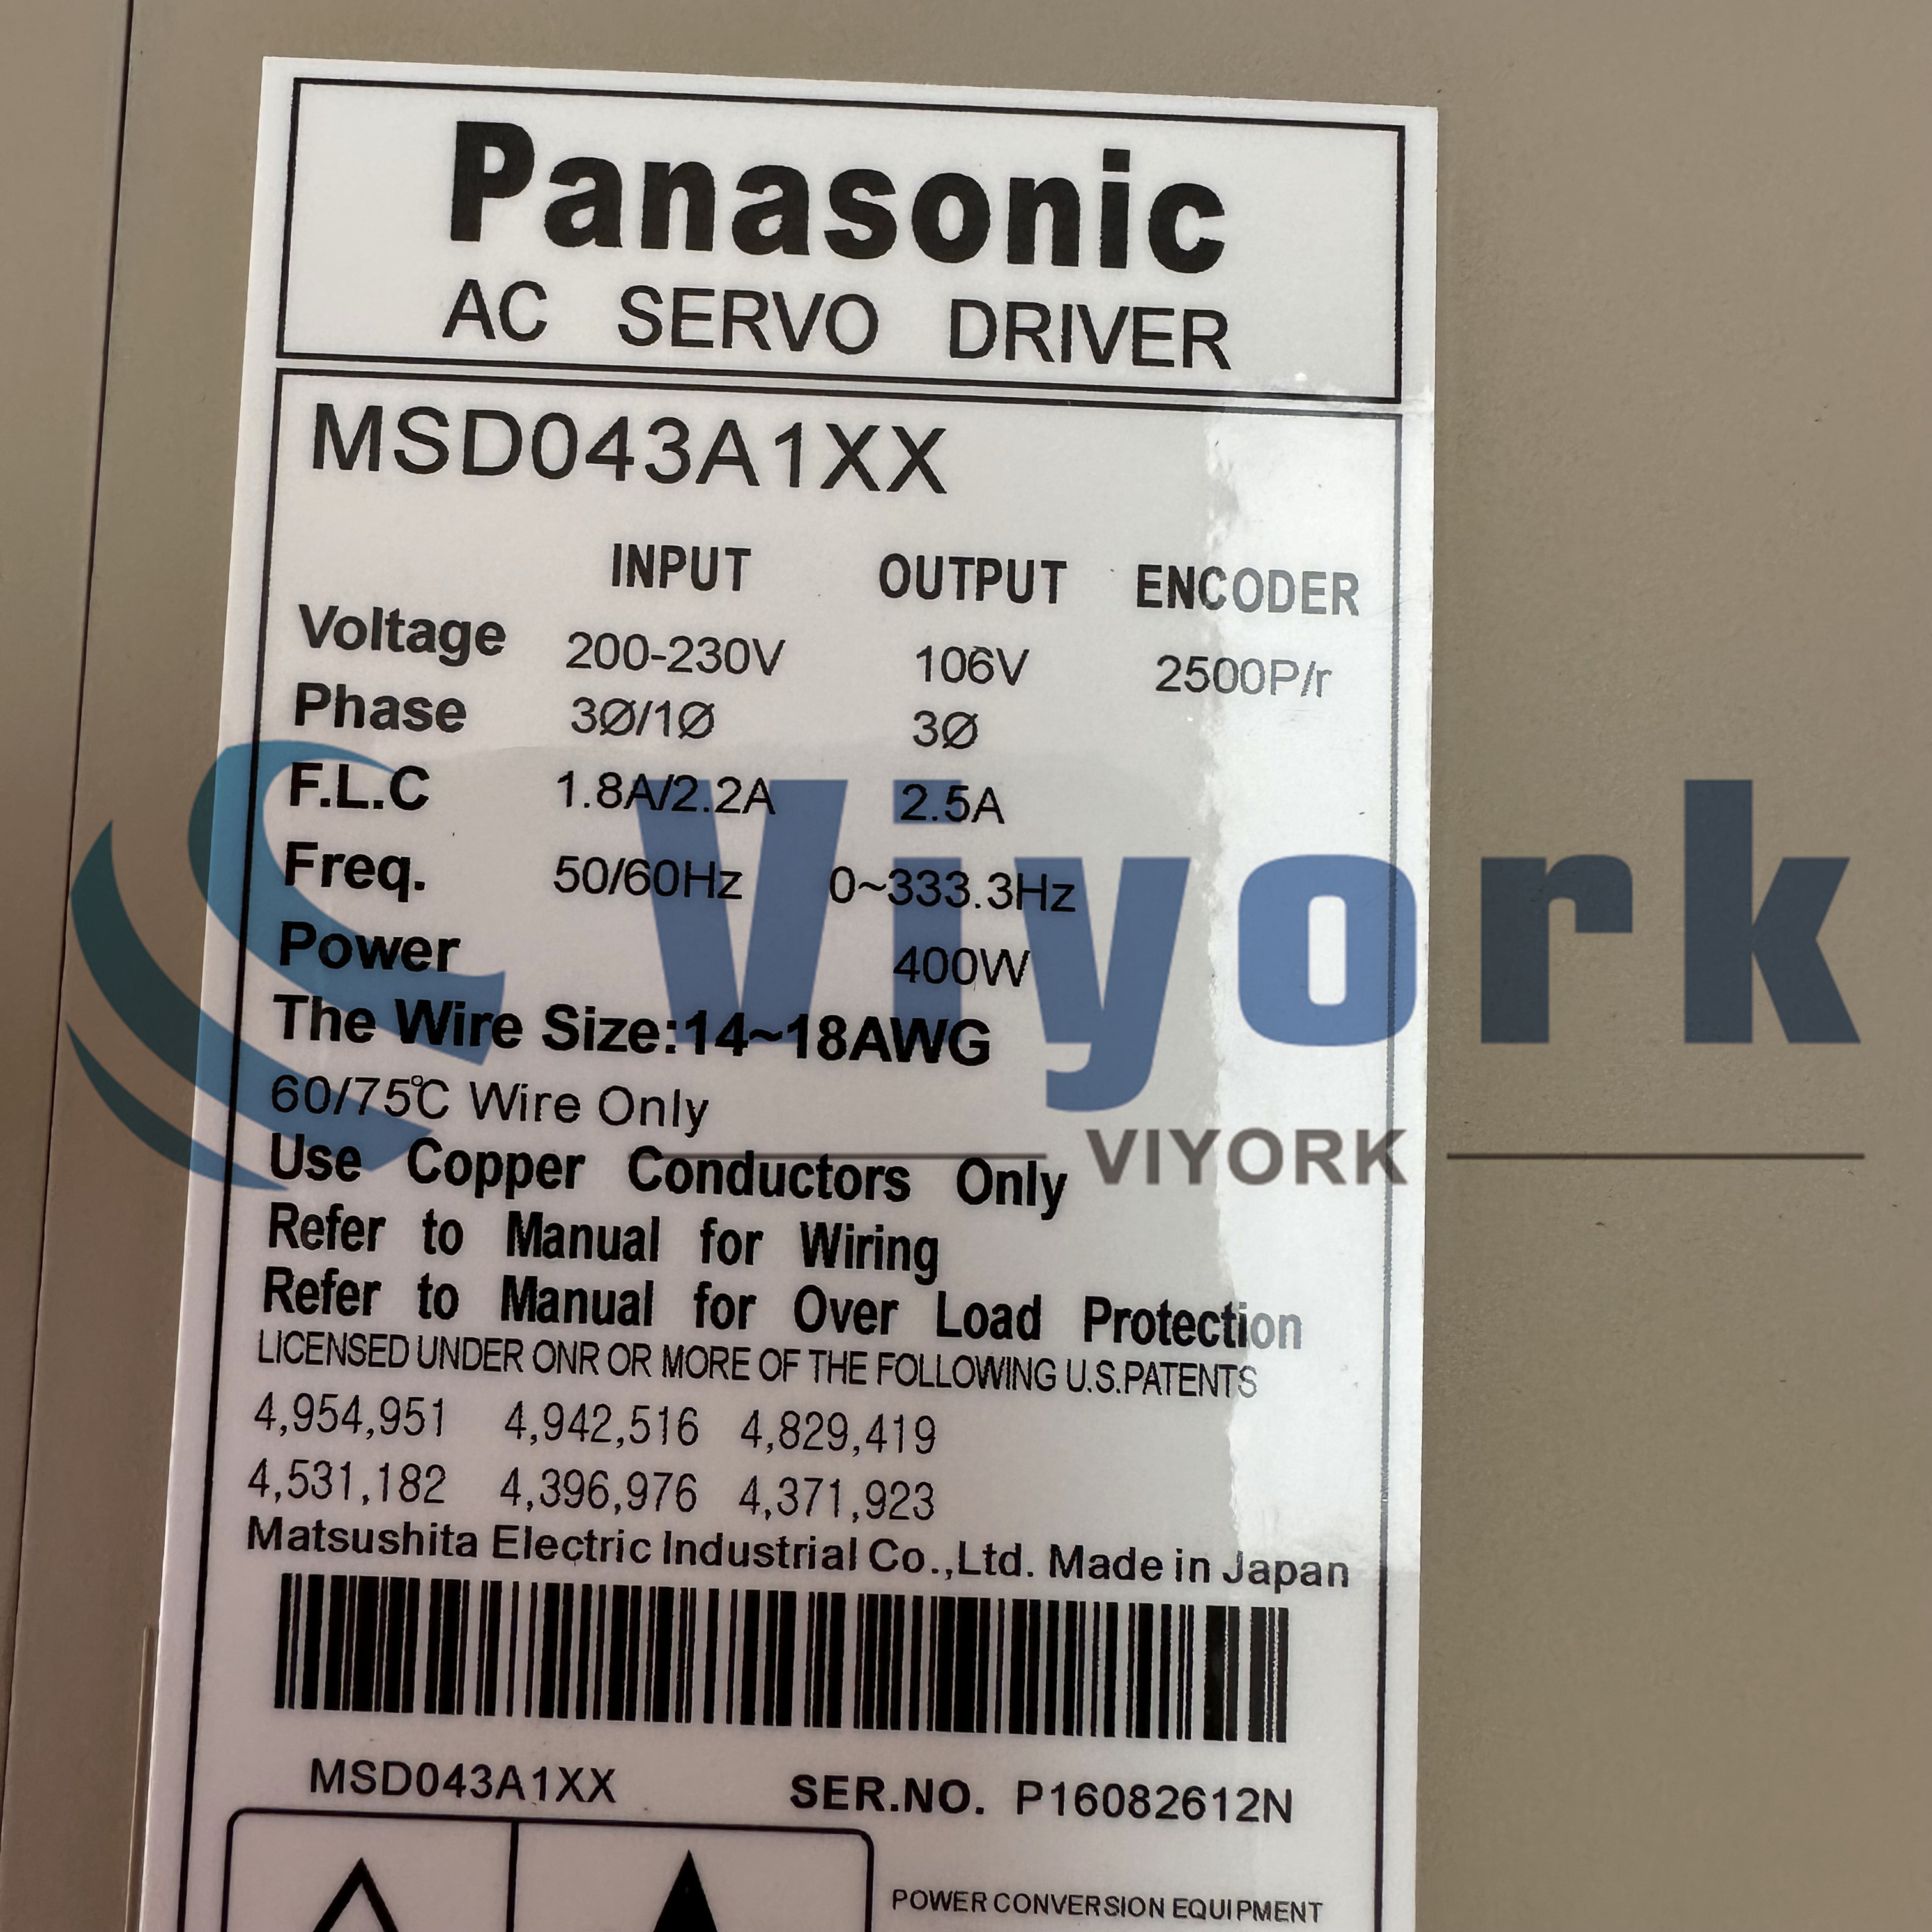 Panasonic MSD043A1XX SERVO DRIVE 200V 400W NEW